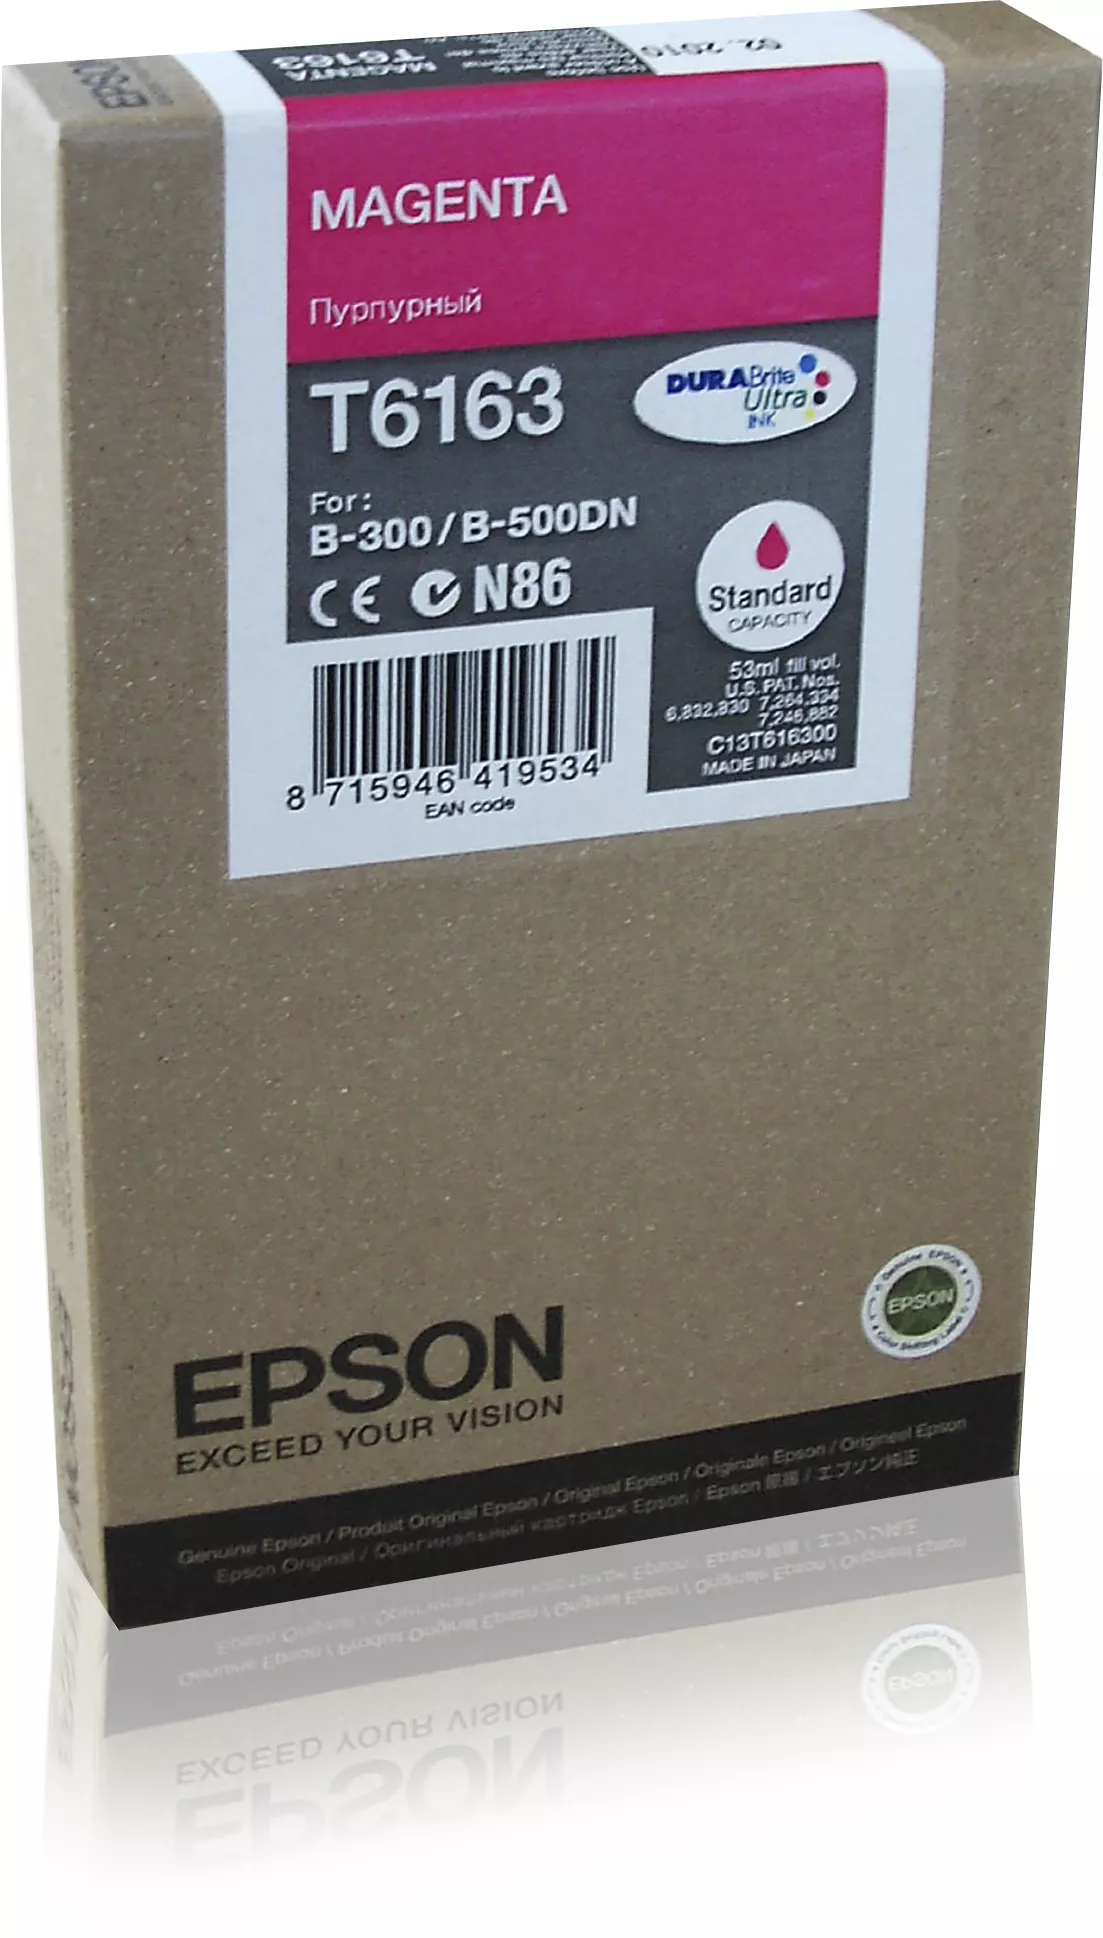 Achat EPSON T6163 cartouche de encre magenta capacité standard au meilleur prix